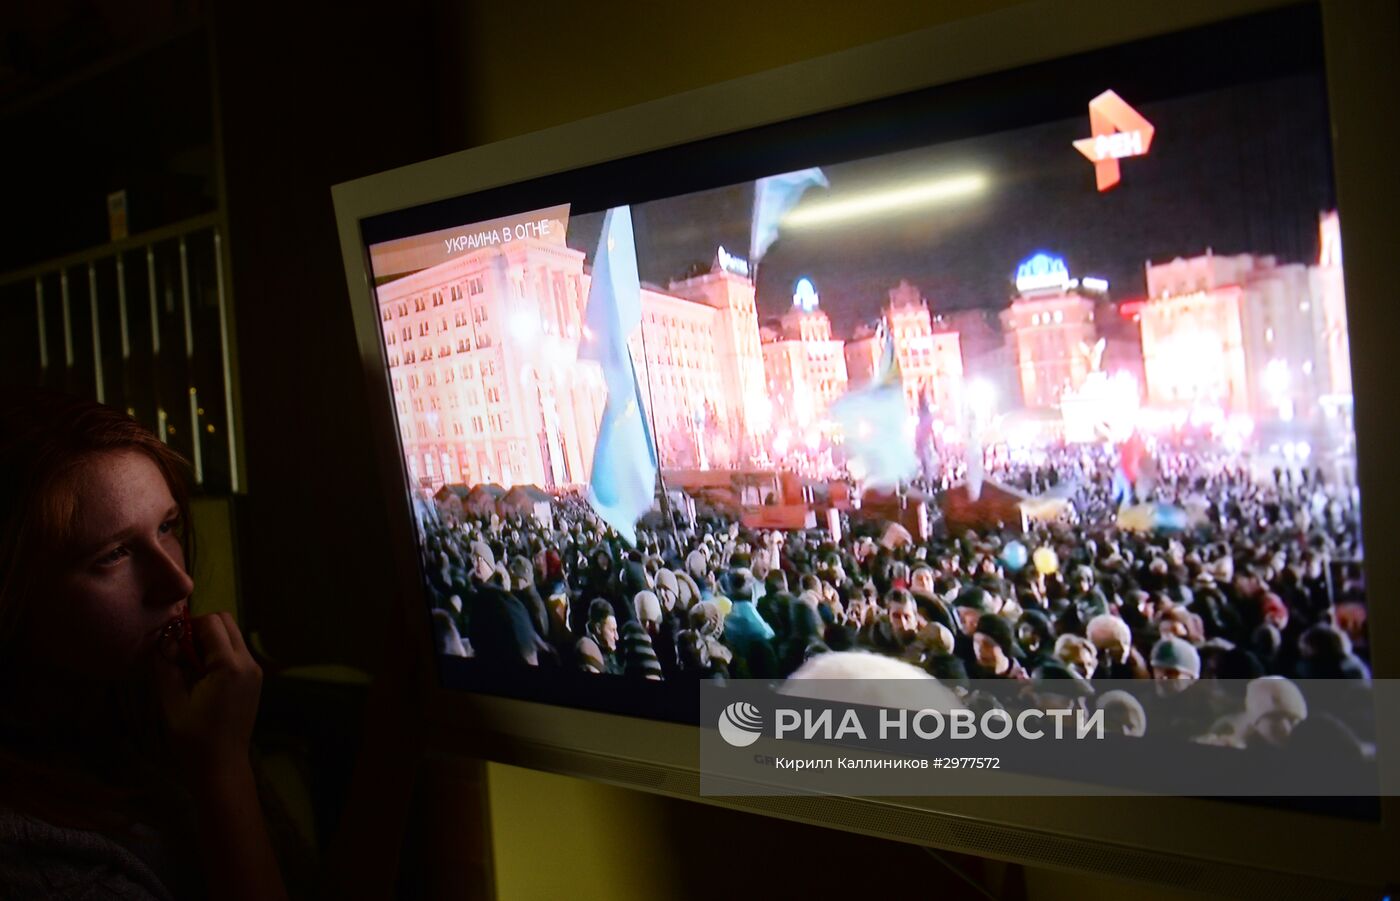 Просмотр документального фильма Оливера Стоуна "Украина в огне"